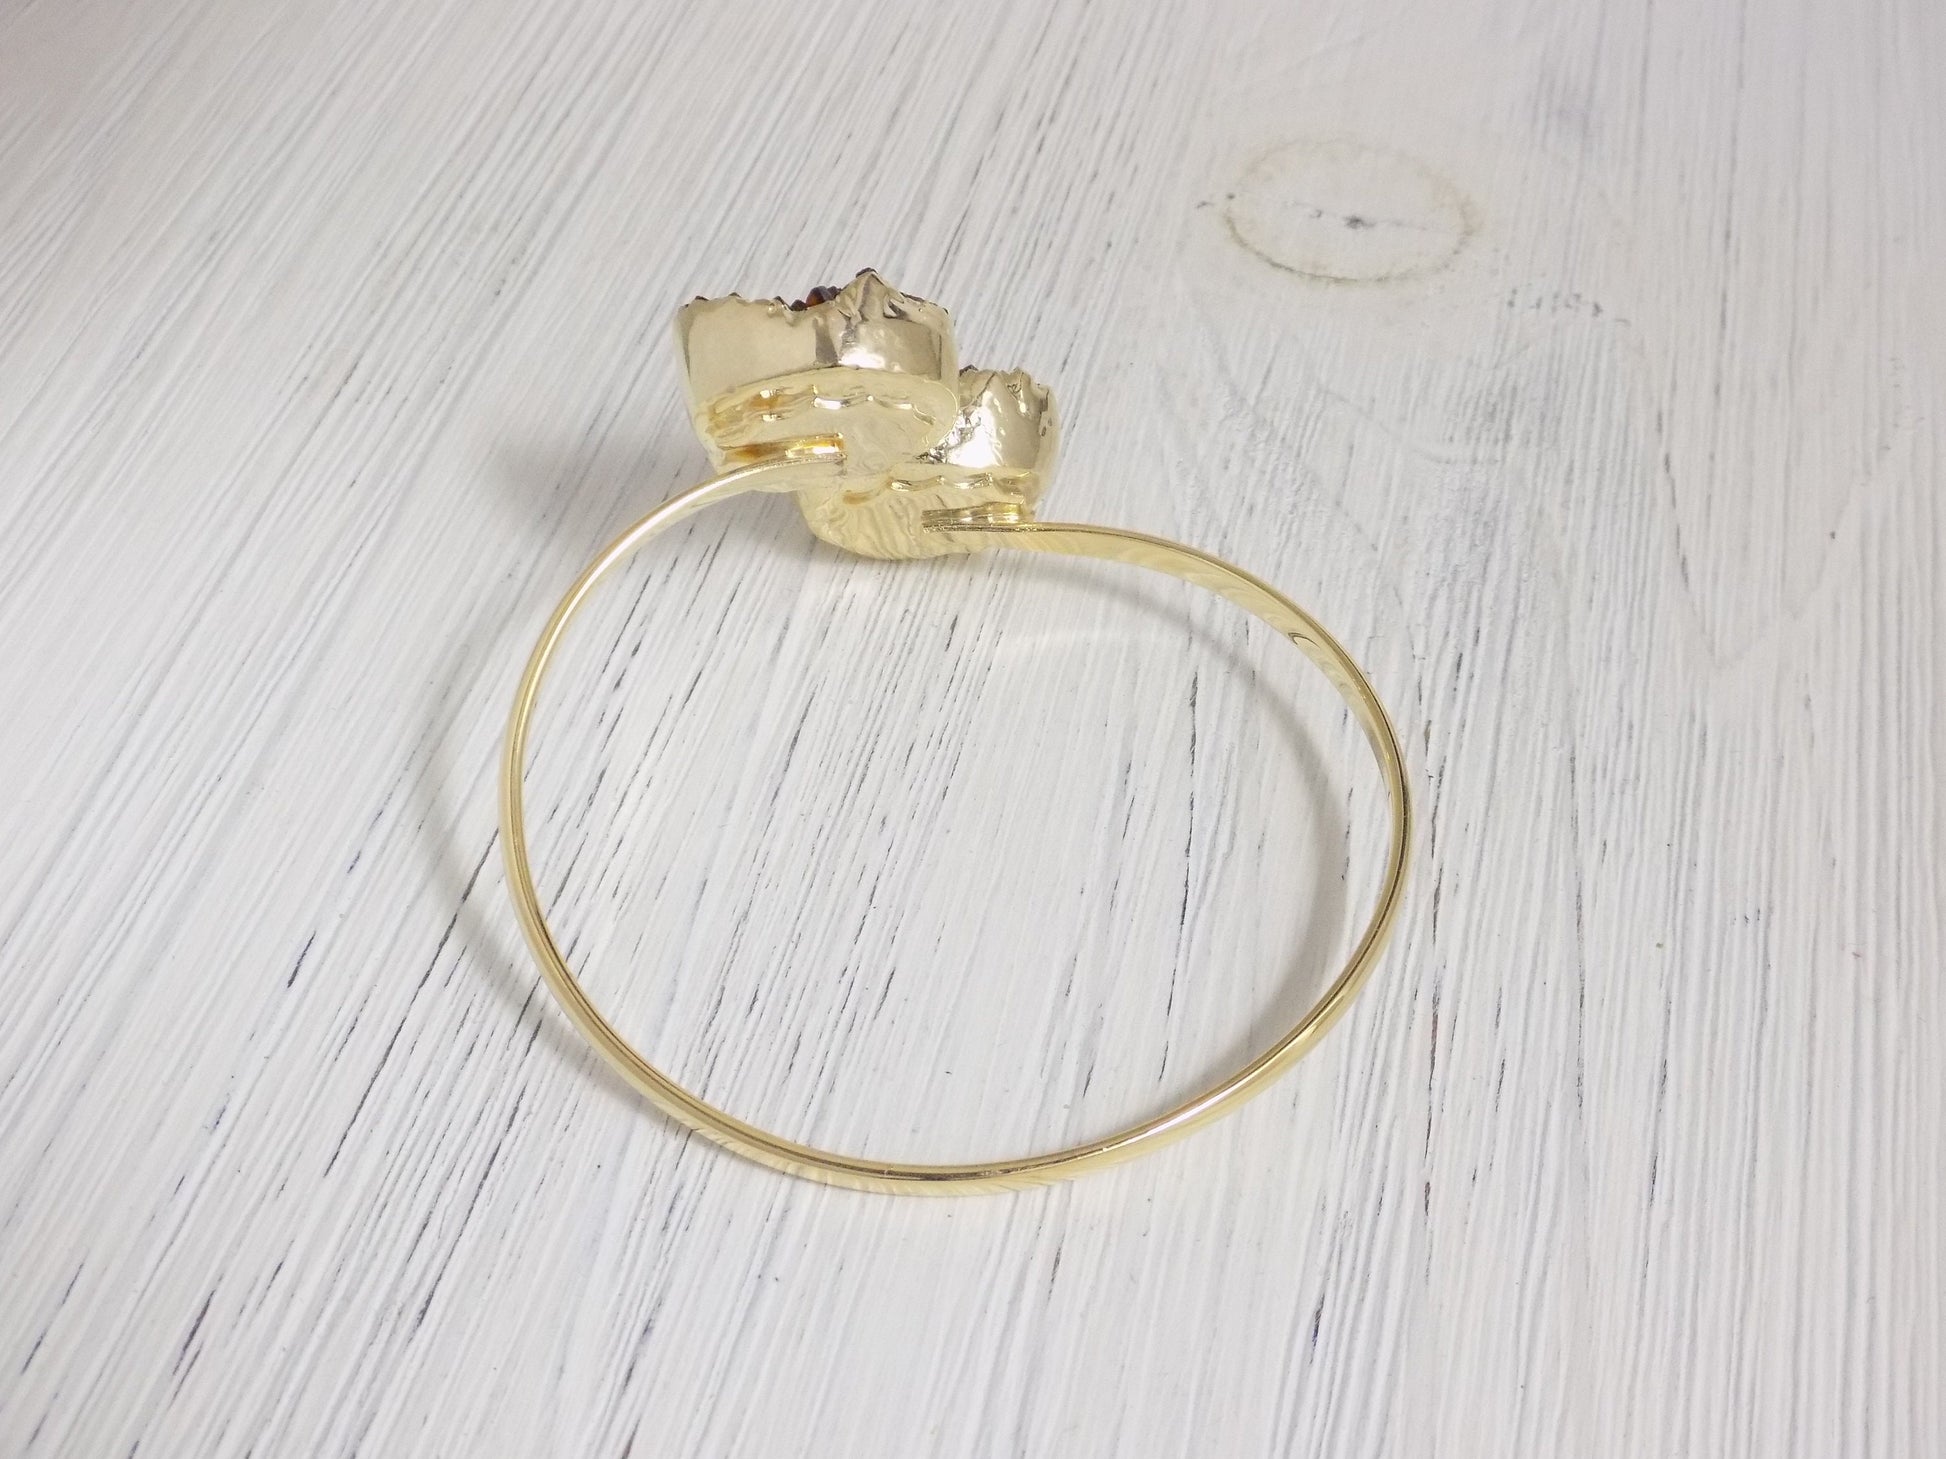 Gifts For Her, Statement Bracelet, Large Druzy Bracelet Adjustable, Citrine Crystal Bangle Gold, G10-93